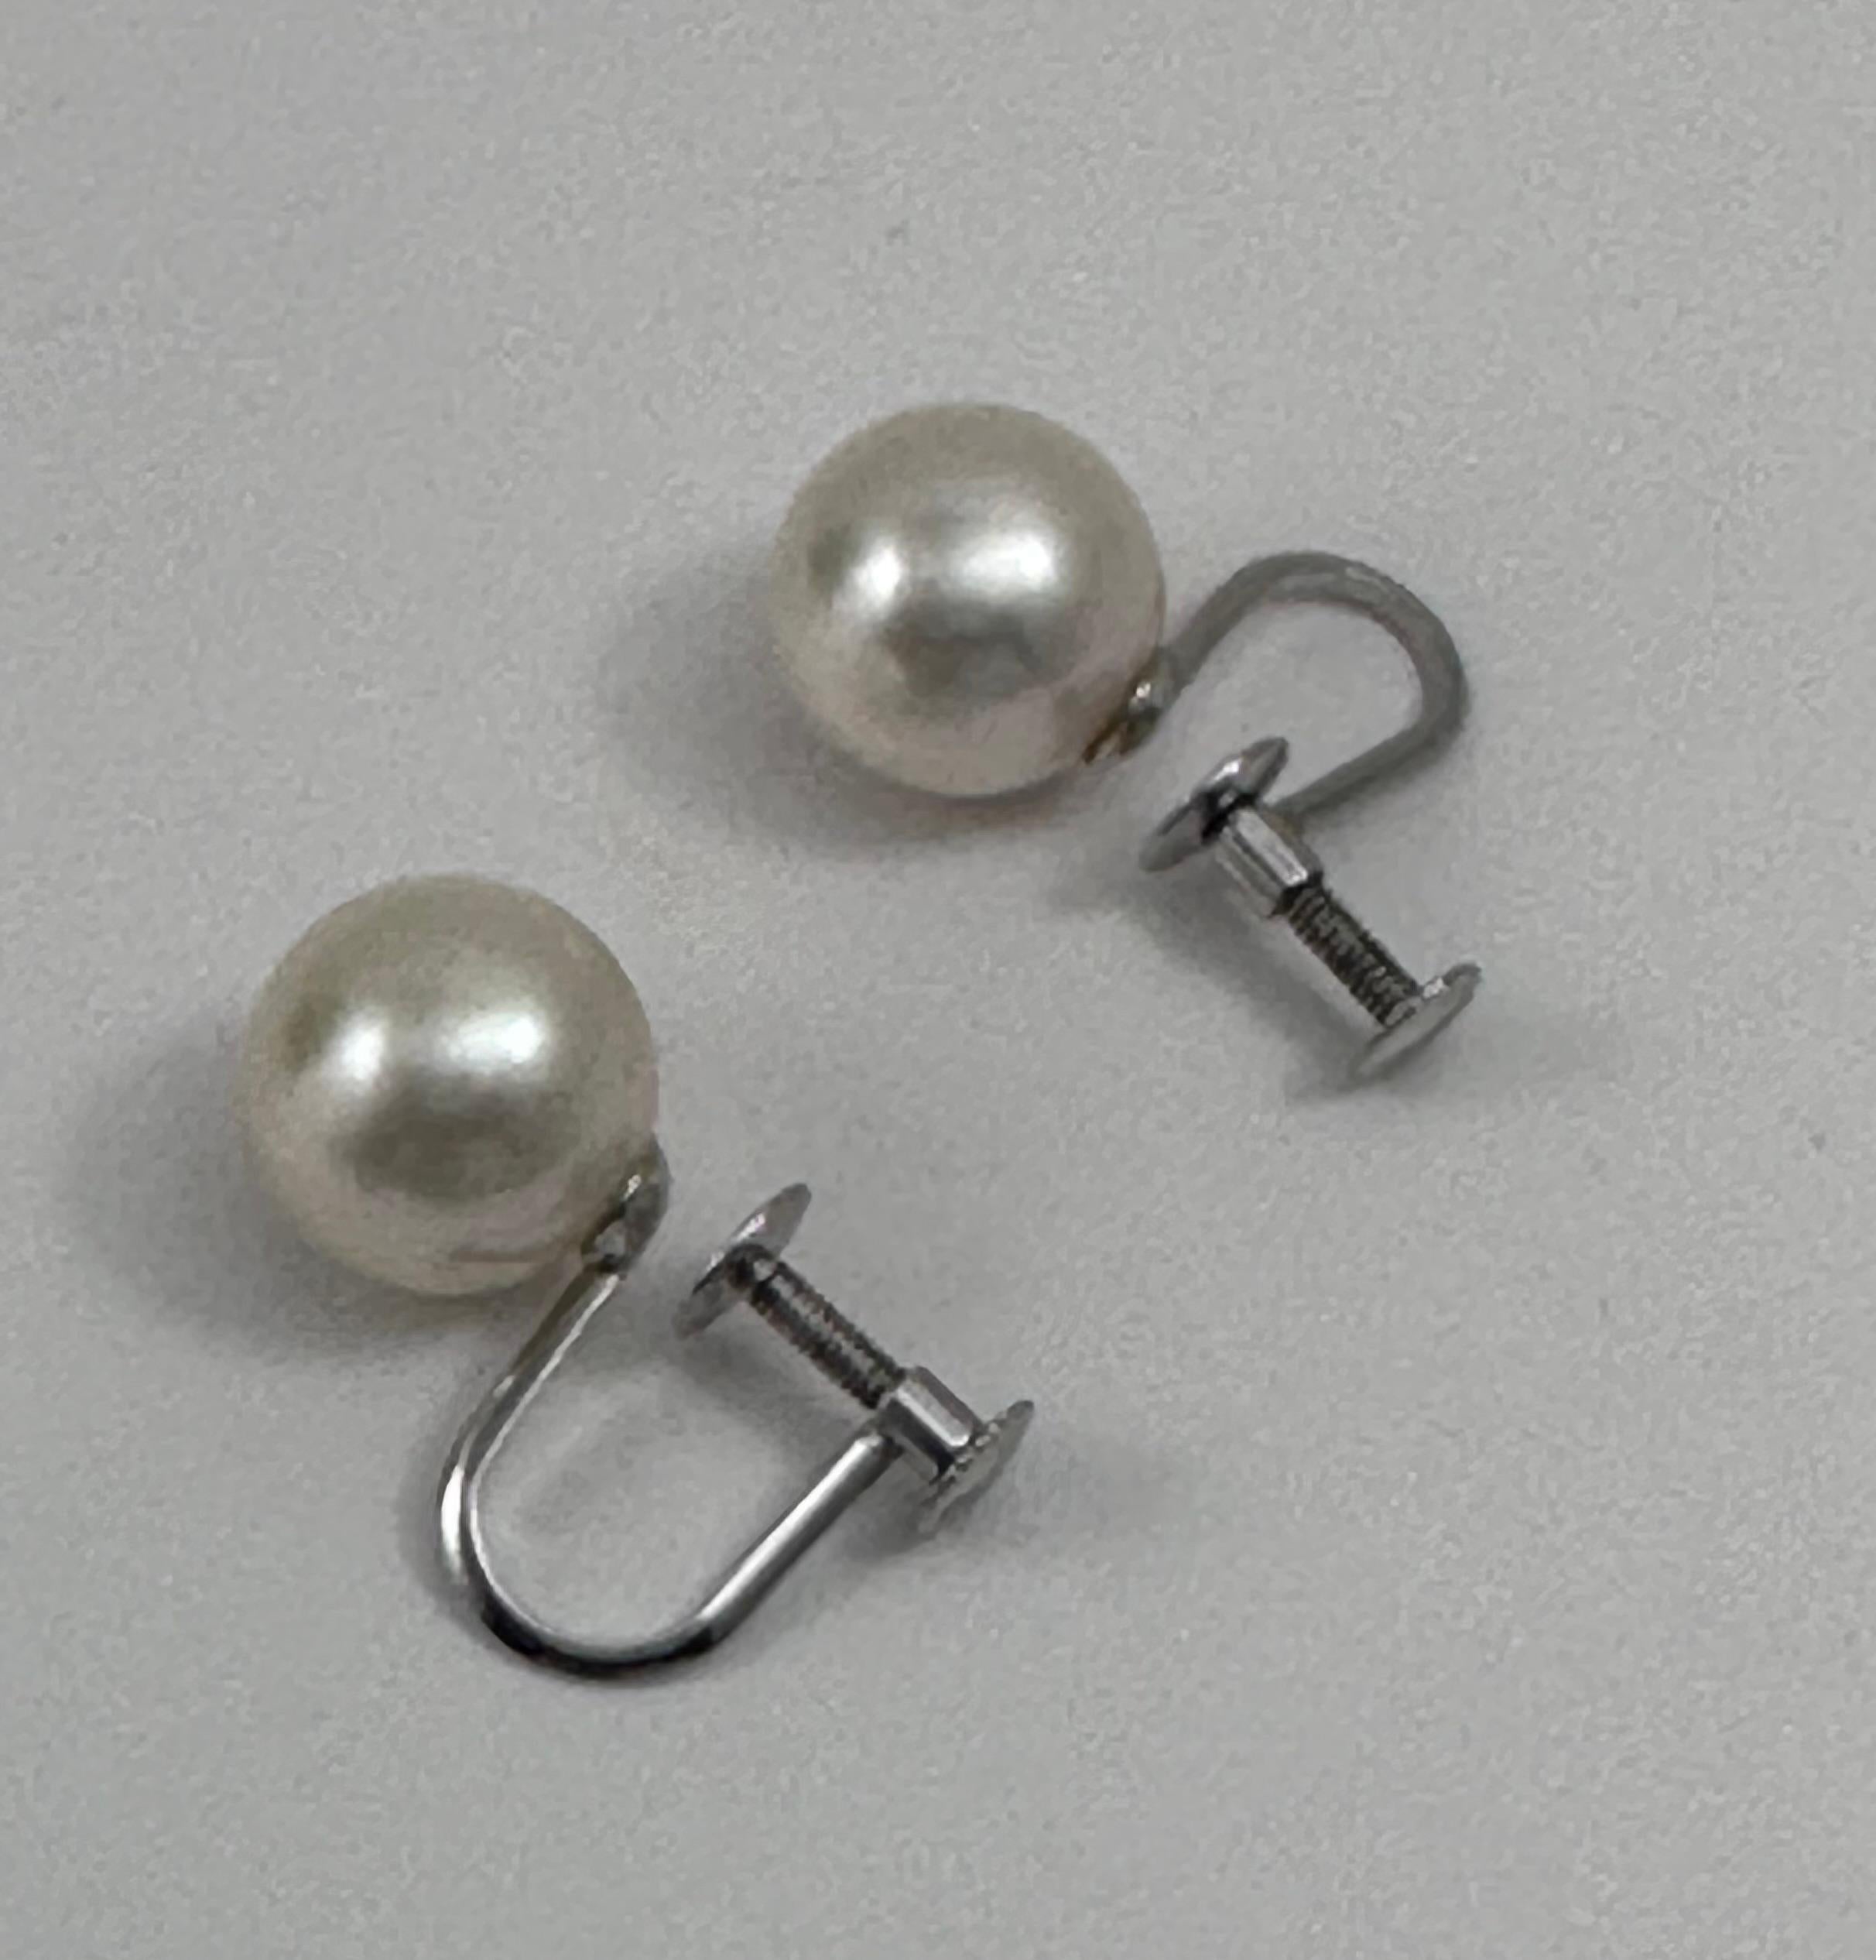 Vintage Platin850 Gold 9mm glänzende Perlen-Ohrringe mit Schraubenverschluss hinten

Perlen sind zierliche, blasse, glänzende, runde und kostbare Objekte, die mühelos unser Interesse wecken. Seit der Antike leben Perlen in unserer Vorstellung und